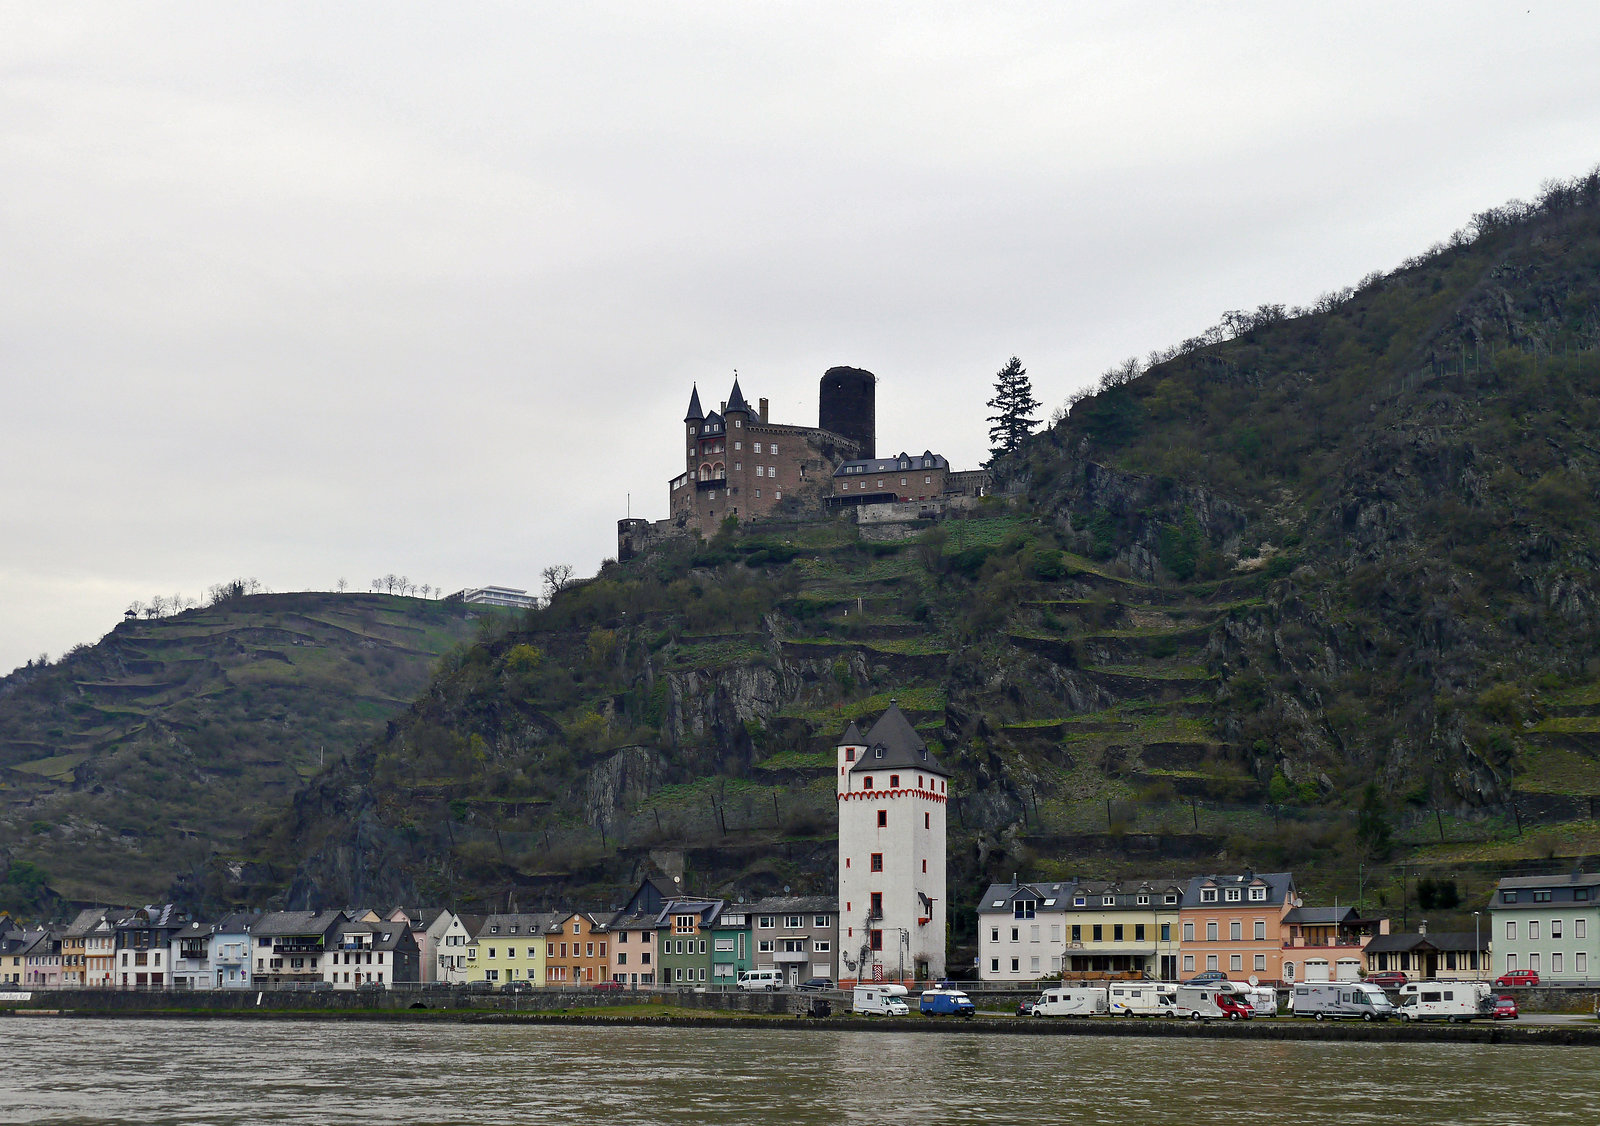 Am Rhein der Mäuse Turm und Oben die Burg Katz